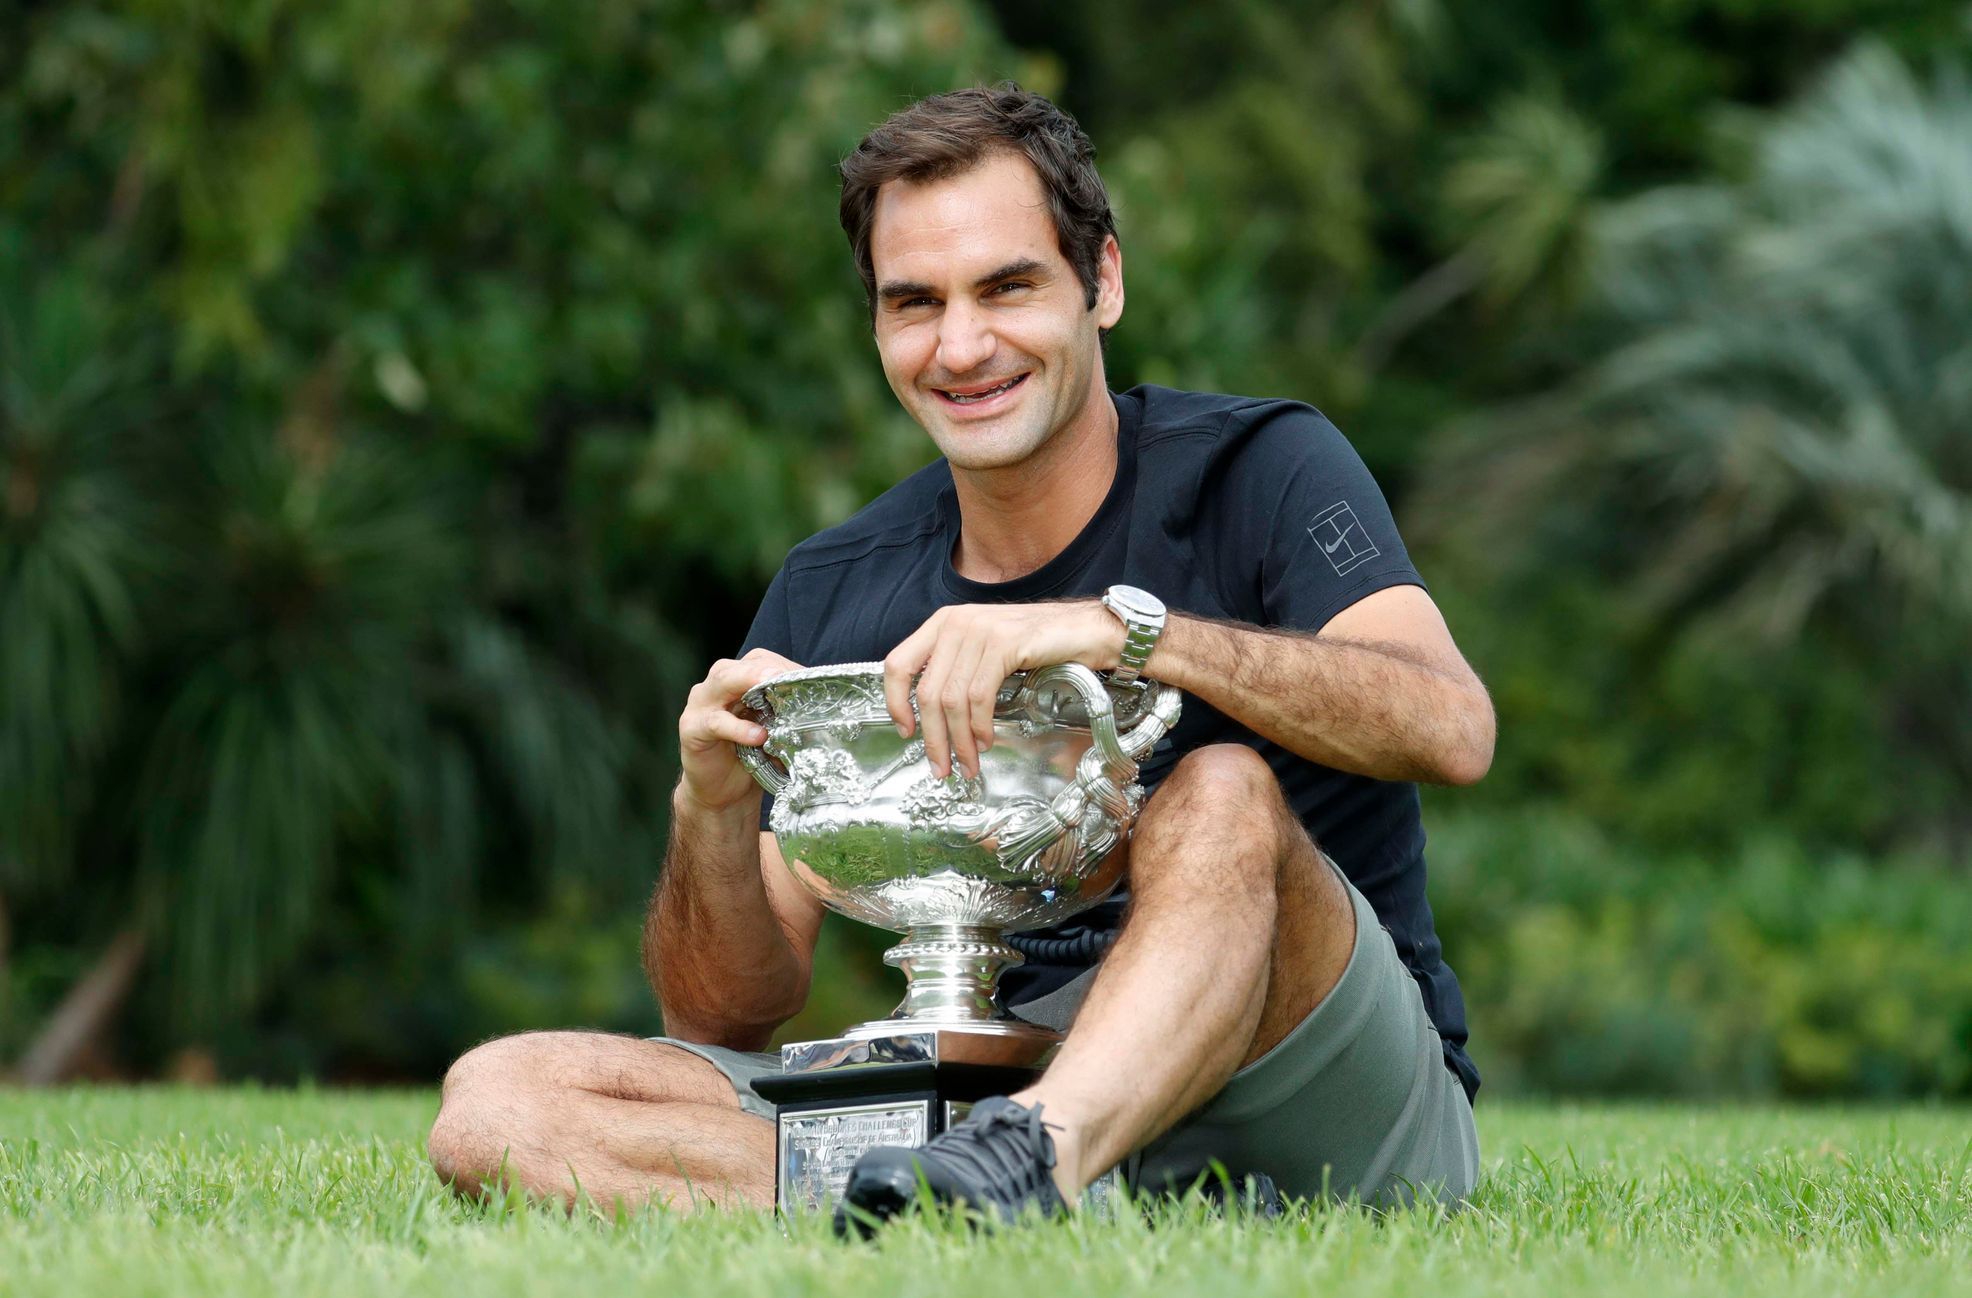 Australian Open 2018: Roger Federer